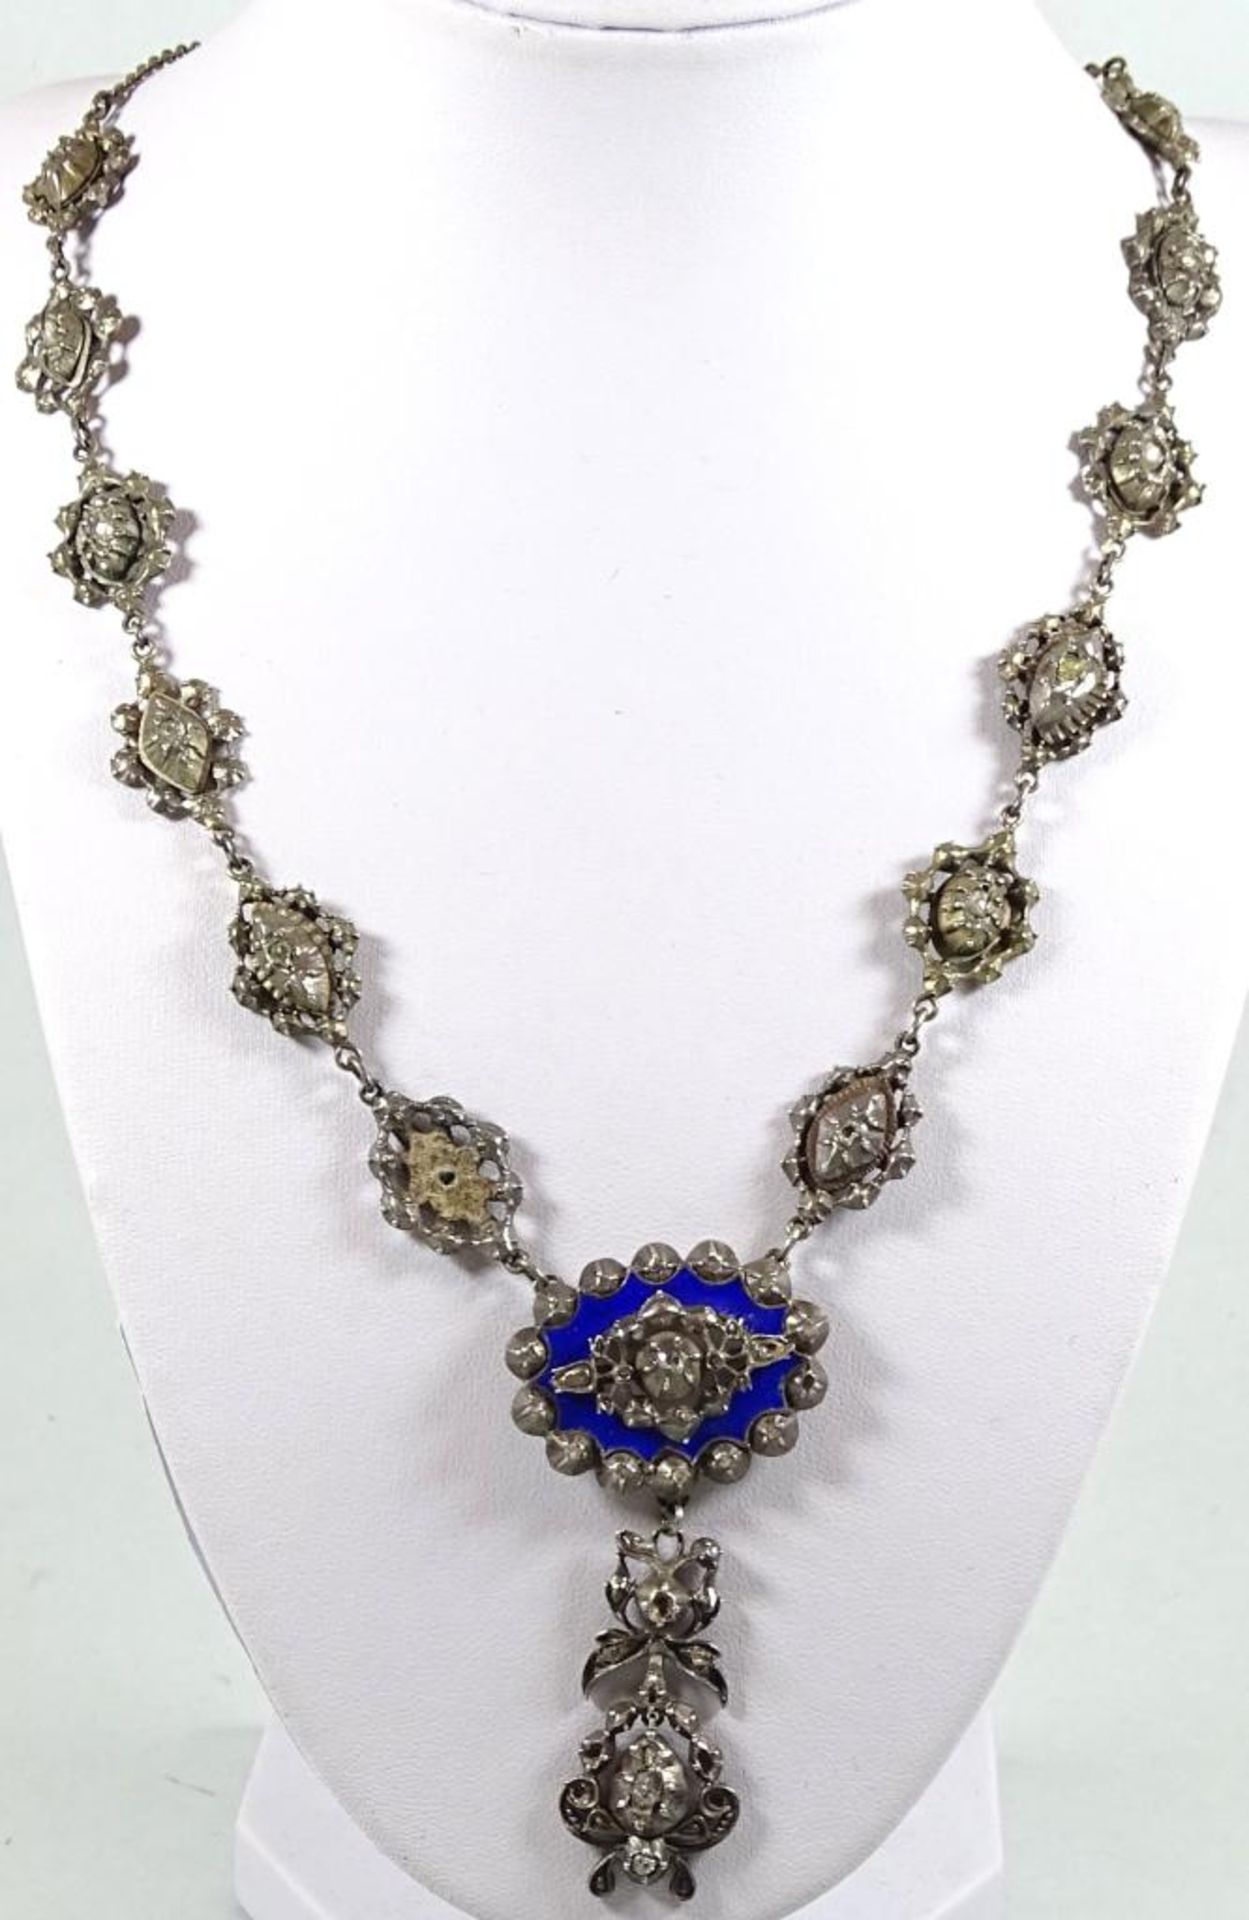 Barock Collier, 17 Jhd.Silber mit blauer Emaille,besetzt mit zahlreichen Diamantrosen, ein